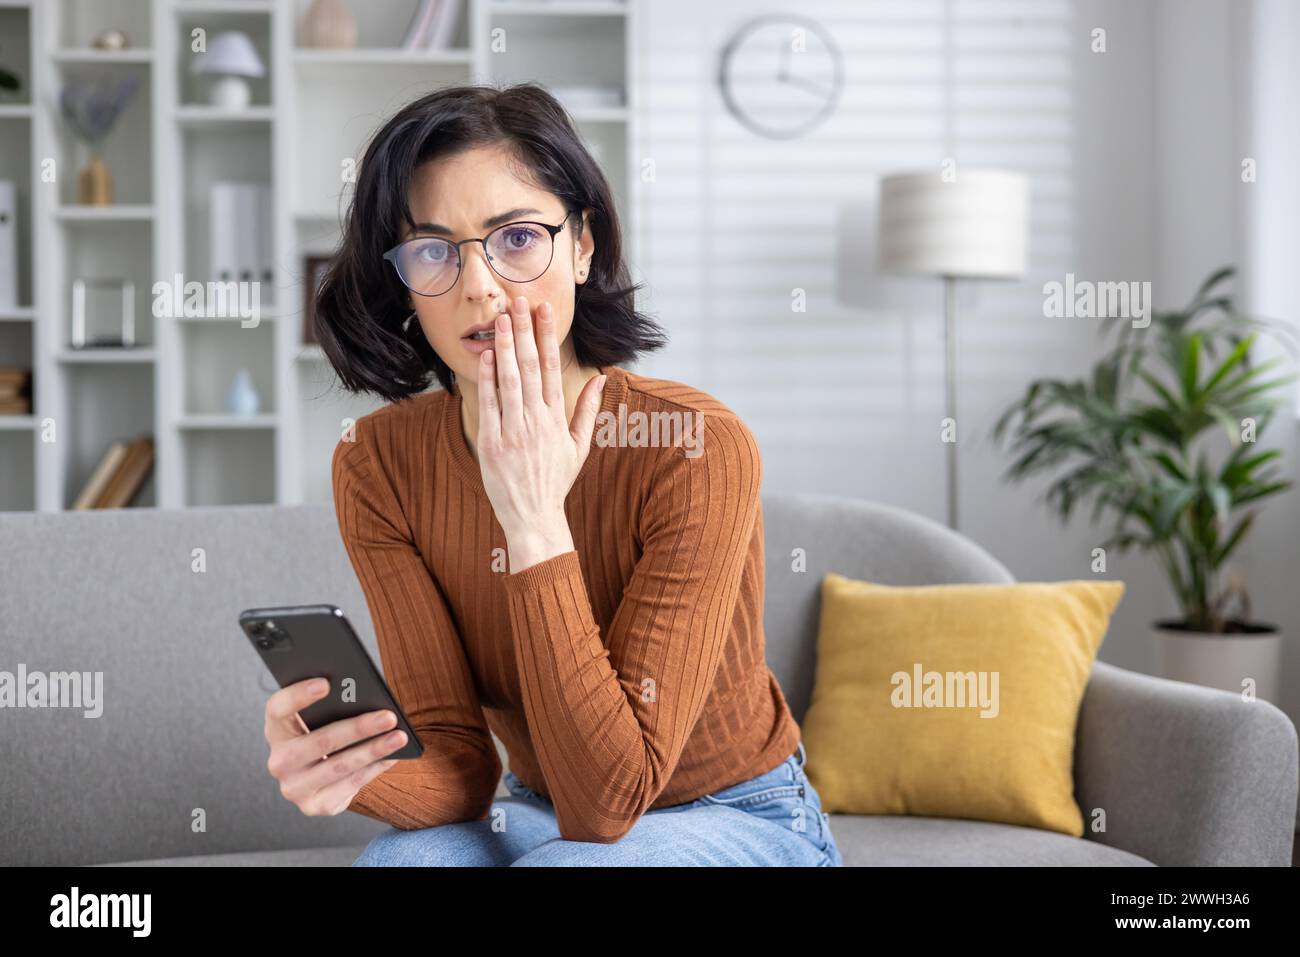 Besorgte Frau, die auf einer Couch sitzt und verwirrt an ihrem Handy aussah, nachdem sie beunruhigende Nachrichten erhalten hatte. Stockfoto